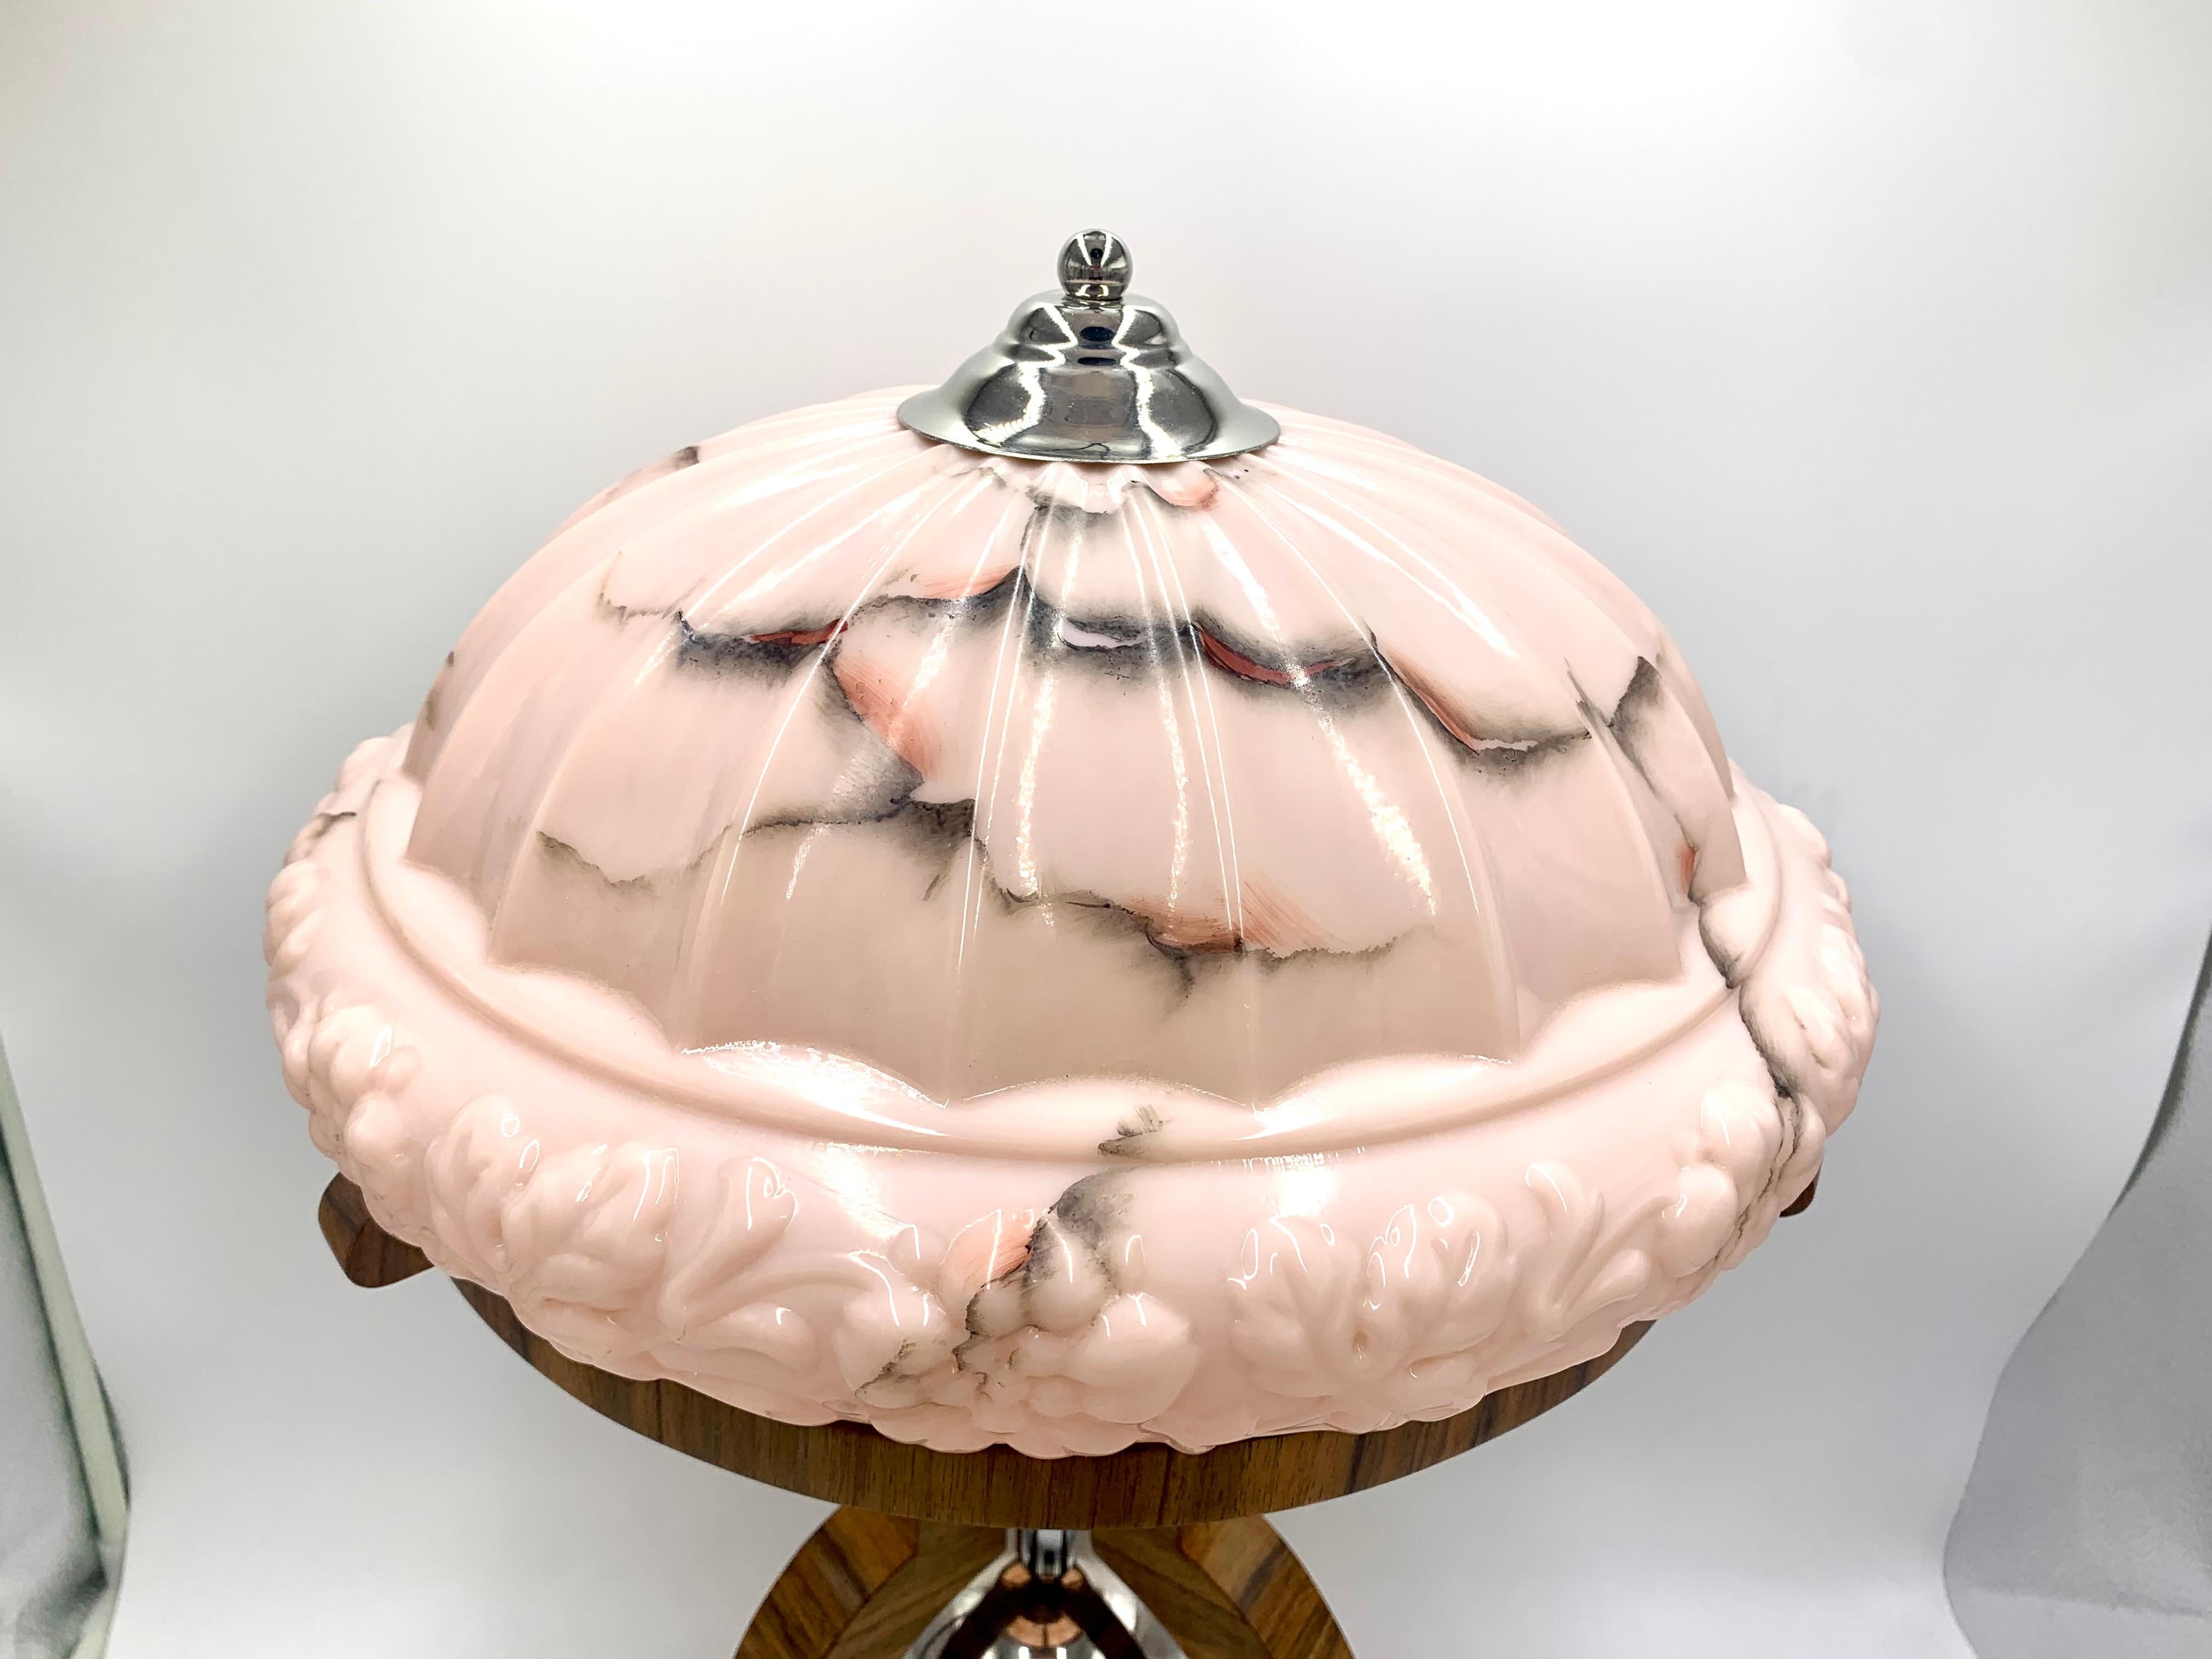 Lampe de table Art Déco avec un grand abat-jour décoratif rose.

Fabriqué en Pologne dans les années 1950.

La posture sera réalisée en bois de noyer verni.

Nouveau câble.

Très bon état.

Dimensions : Hauteur : 61 cm diamètre de la base